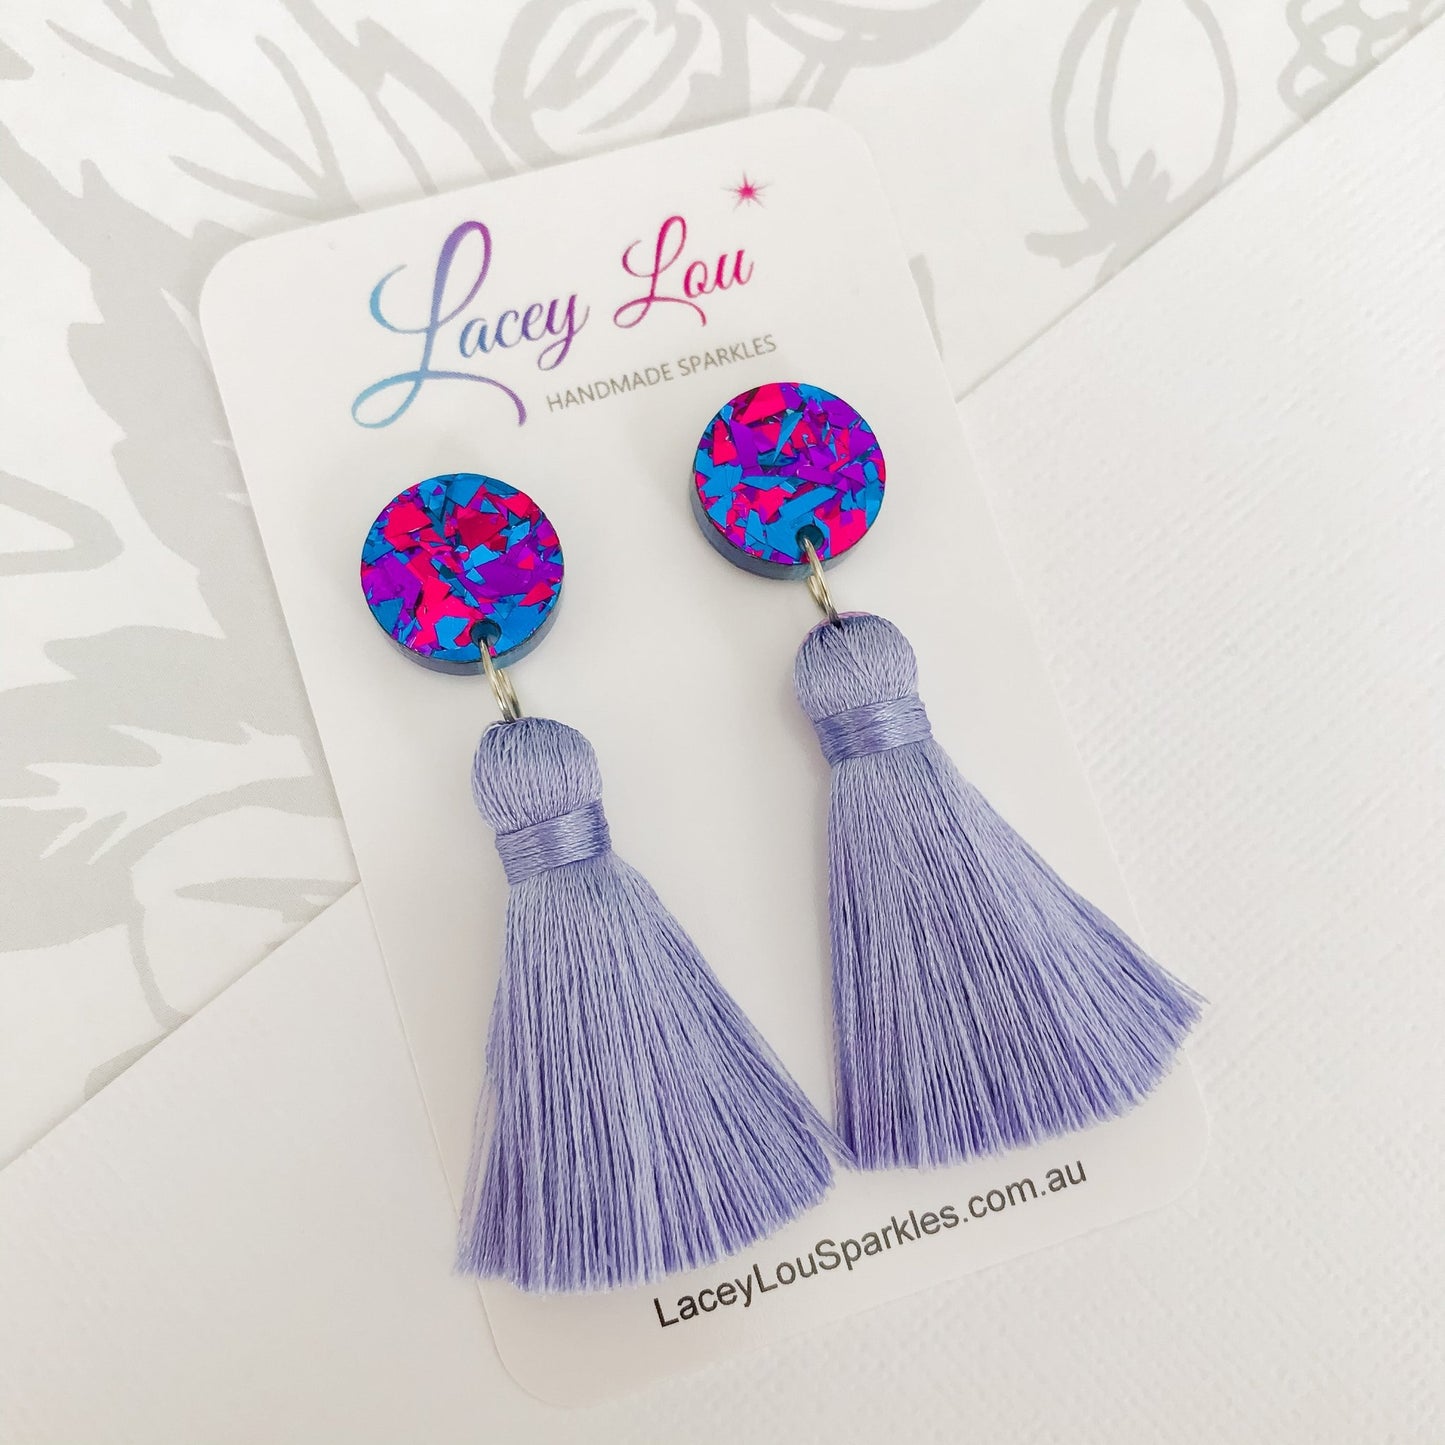 Large Silk Tassel Earring - Dusty Blue Tassel - Lacey Lou Sparkles